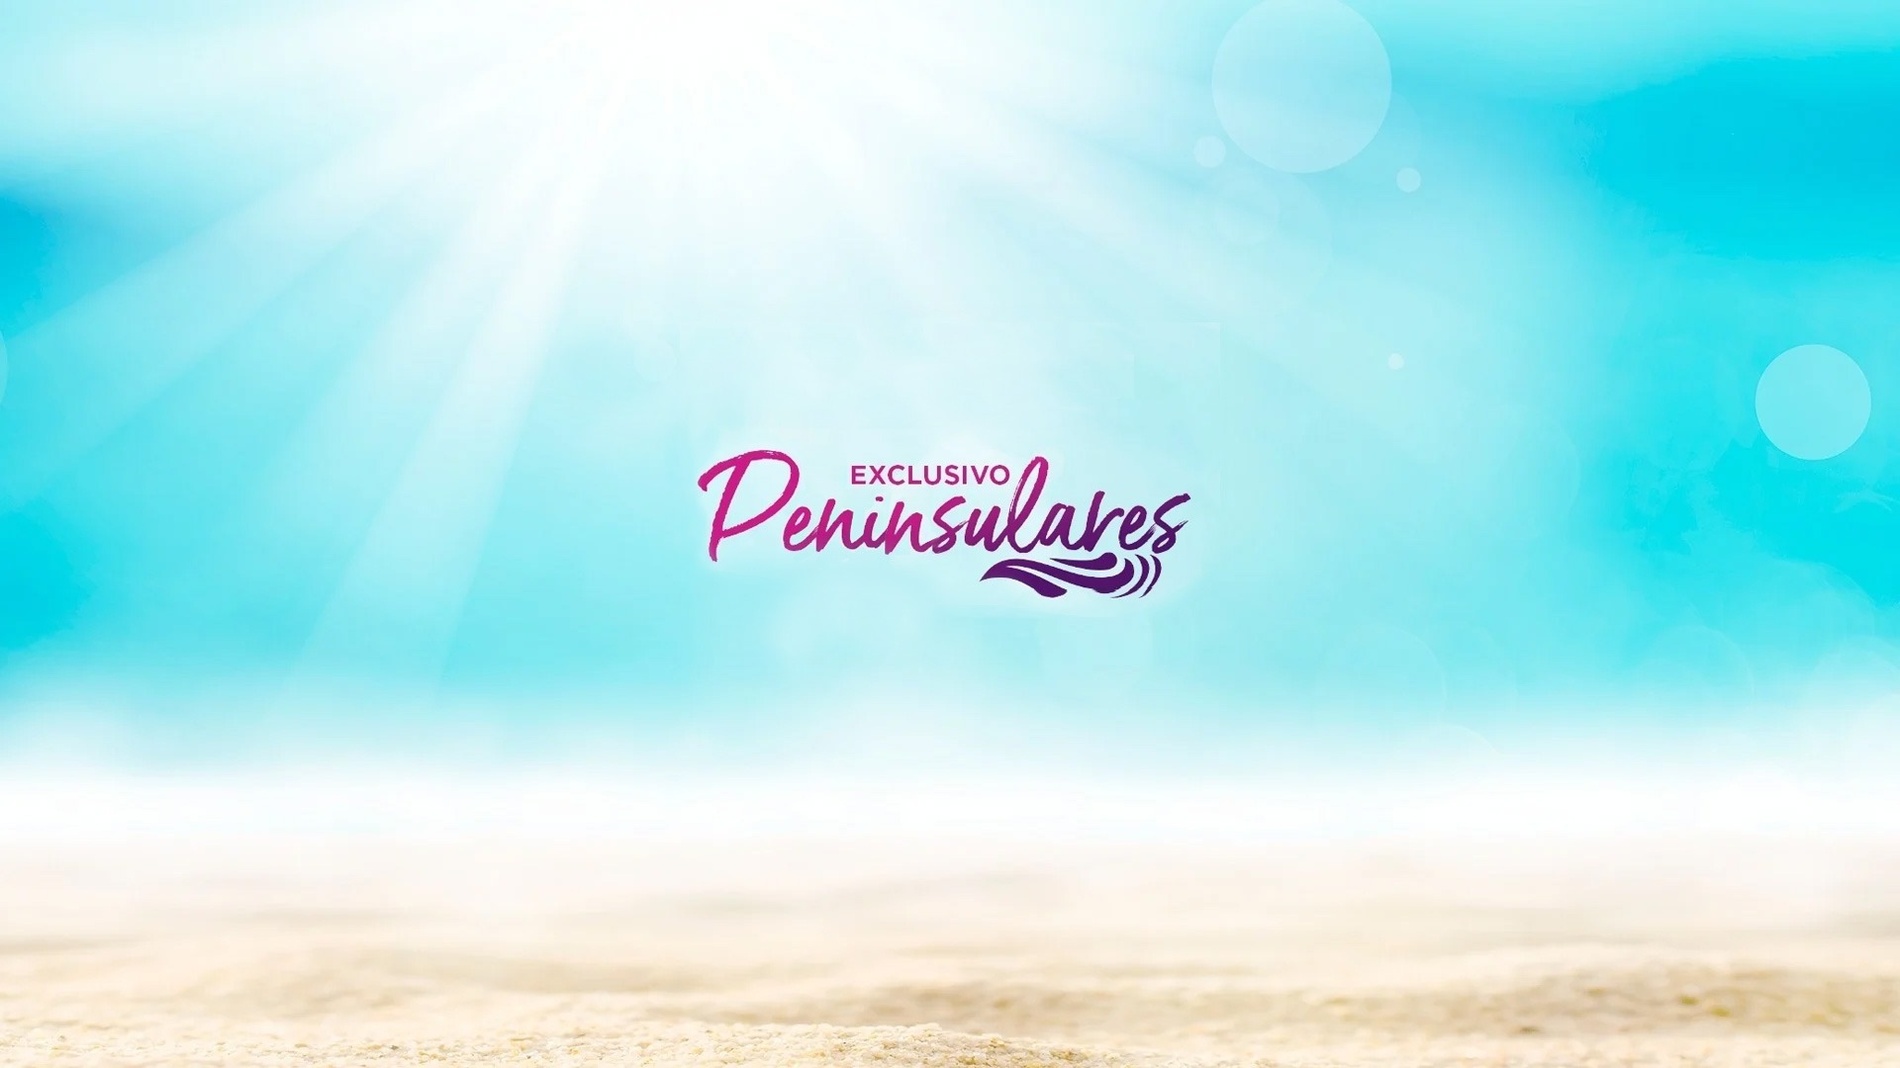 um fundo de praia com o logotipo exclusivo peninsulares